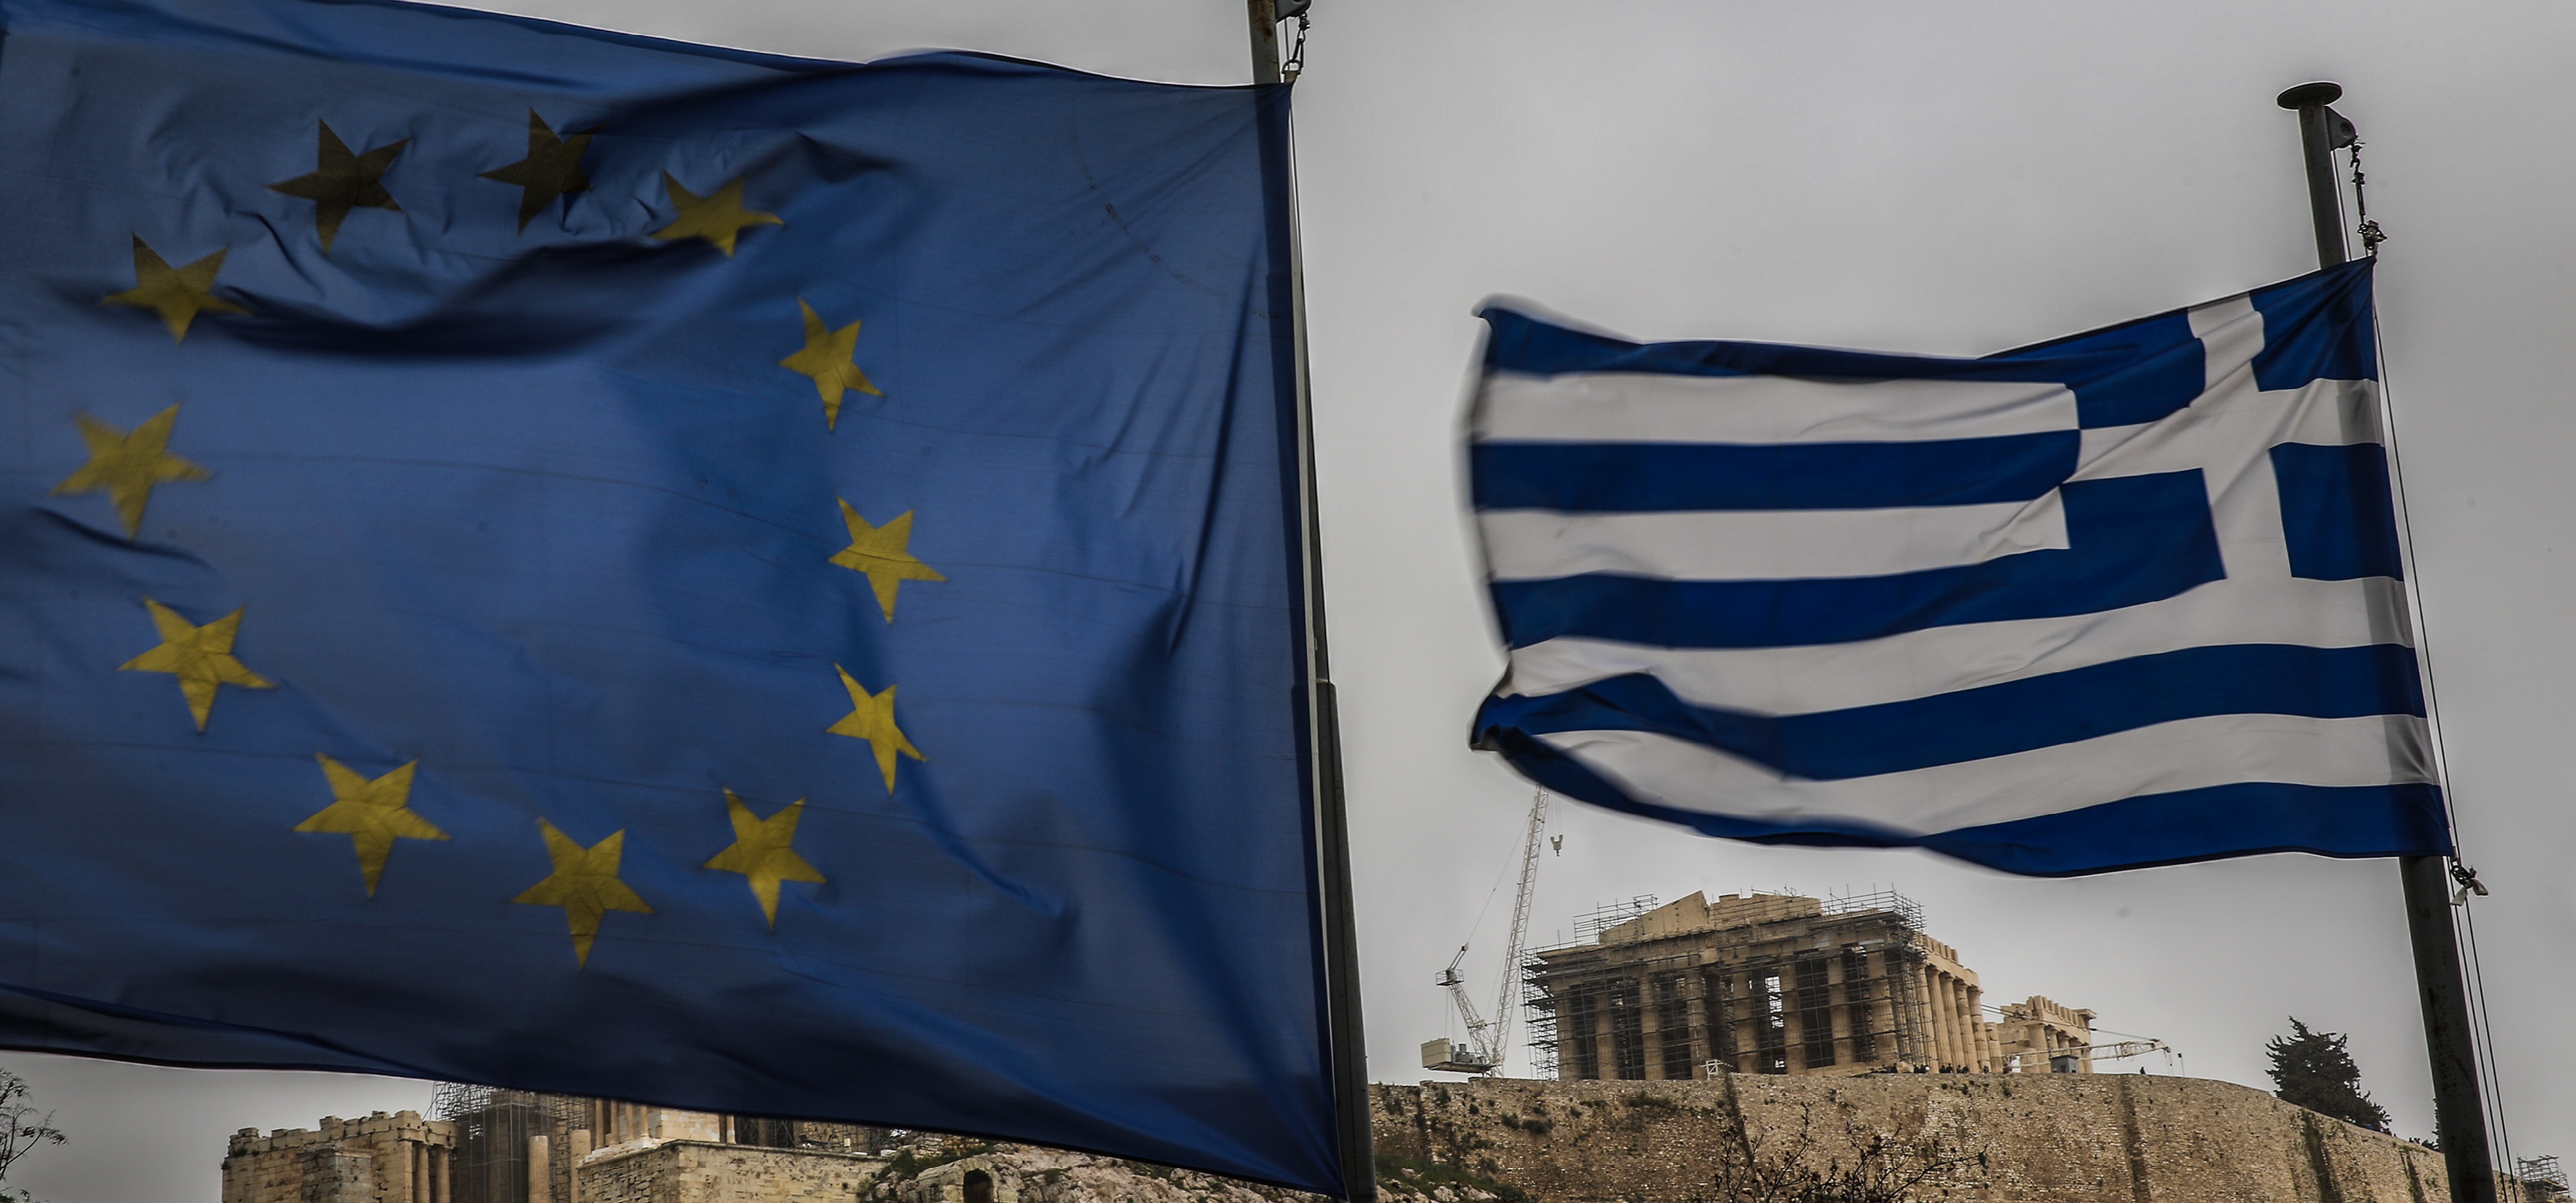 Σε τροχιά ανάπτυξης μπαίνει η Ελλάδα! Τι “δείχνουν” οι οίκοι αξιολόγησης για την οικονομία